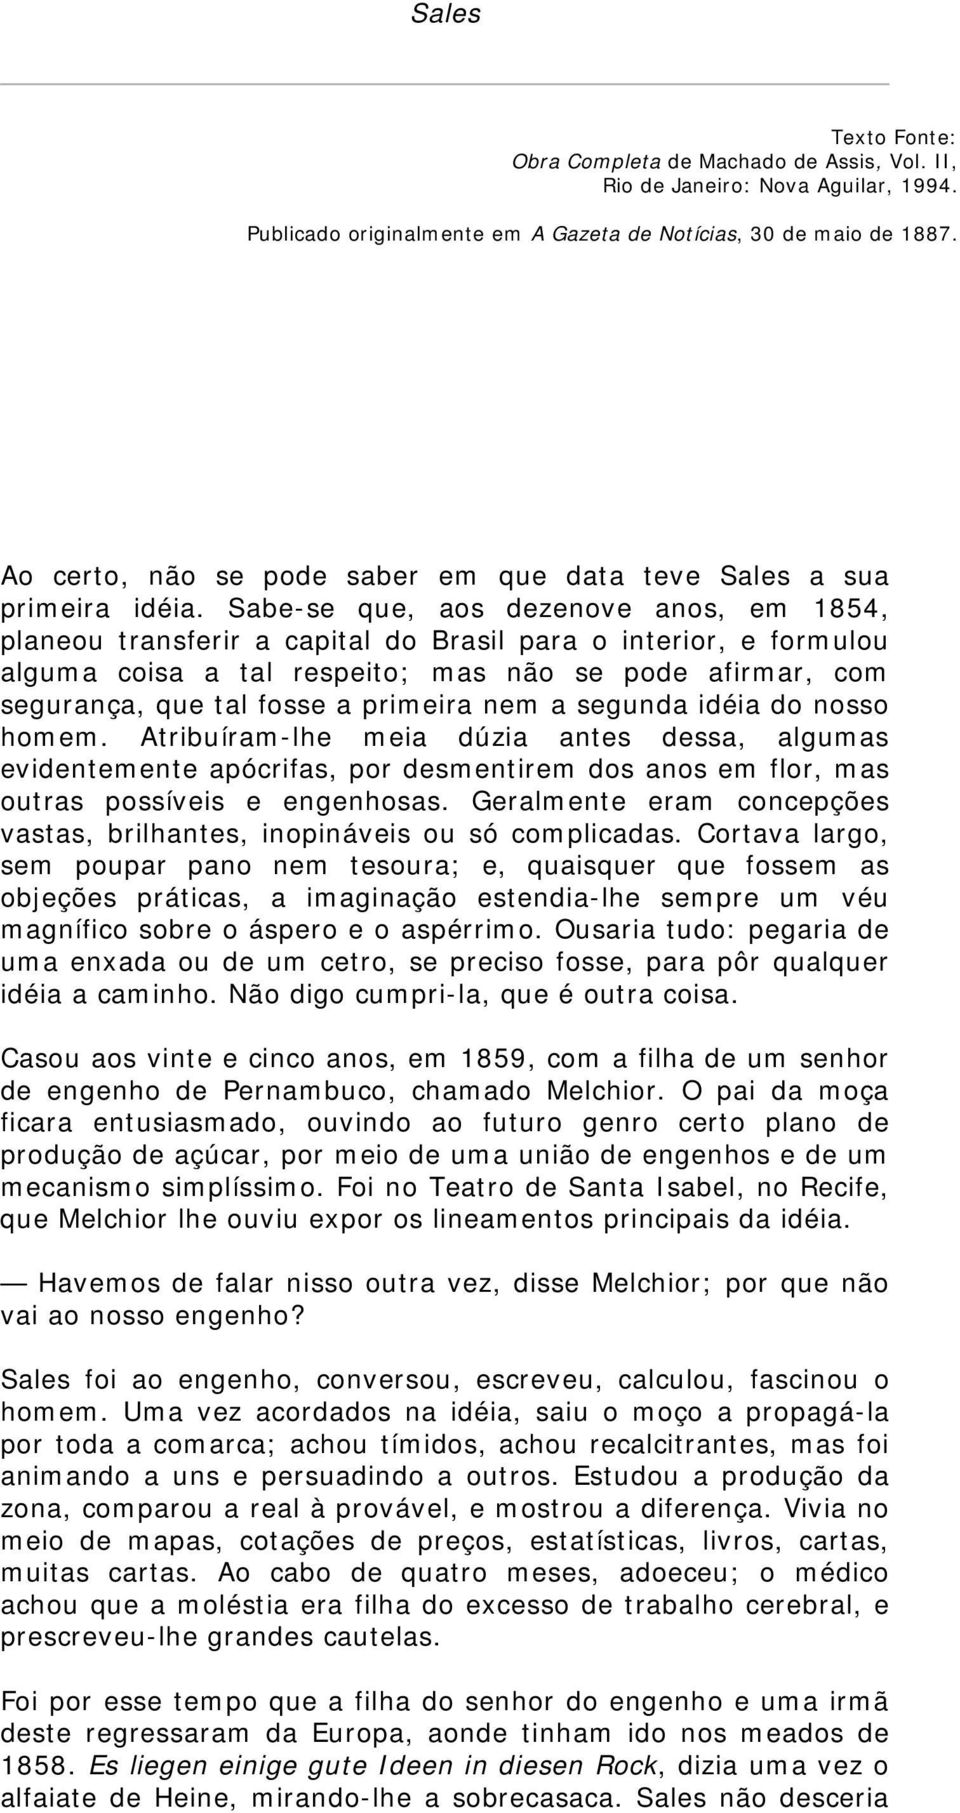 Sabe-se que, aos dezenove anos, em 1854, planeou transferir a capital do Brasil para o interior, e formulou alguma coisa a tal respeito; mas não se pode afirmar, com segurança, que tal fosse a